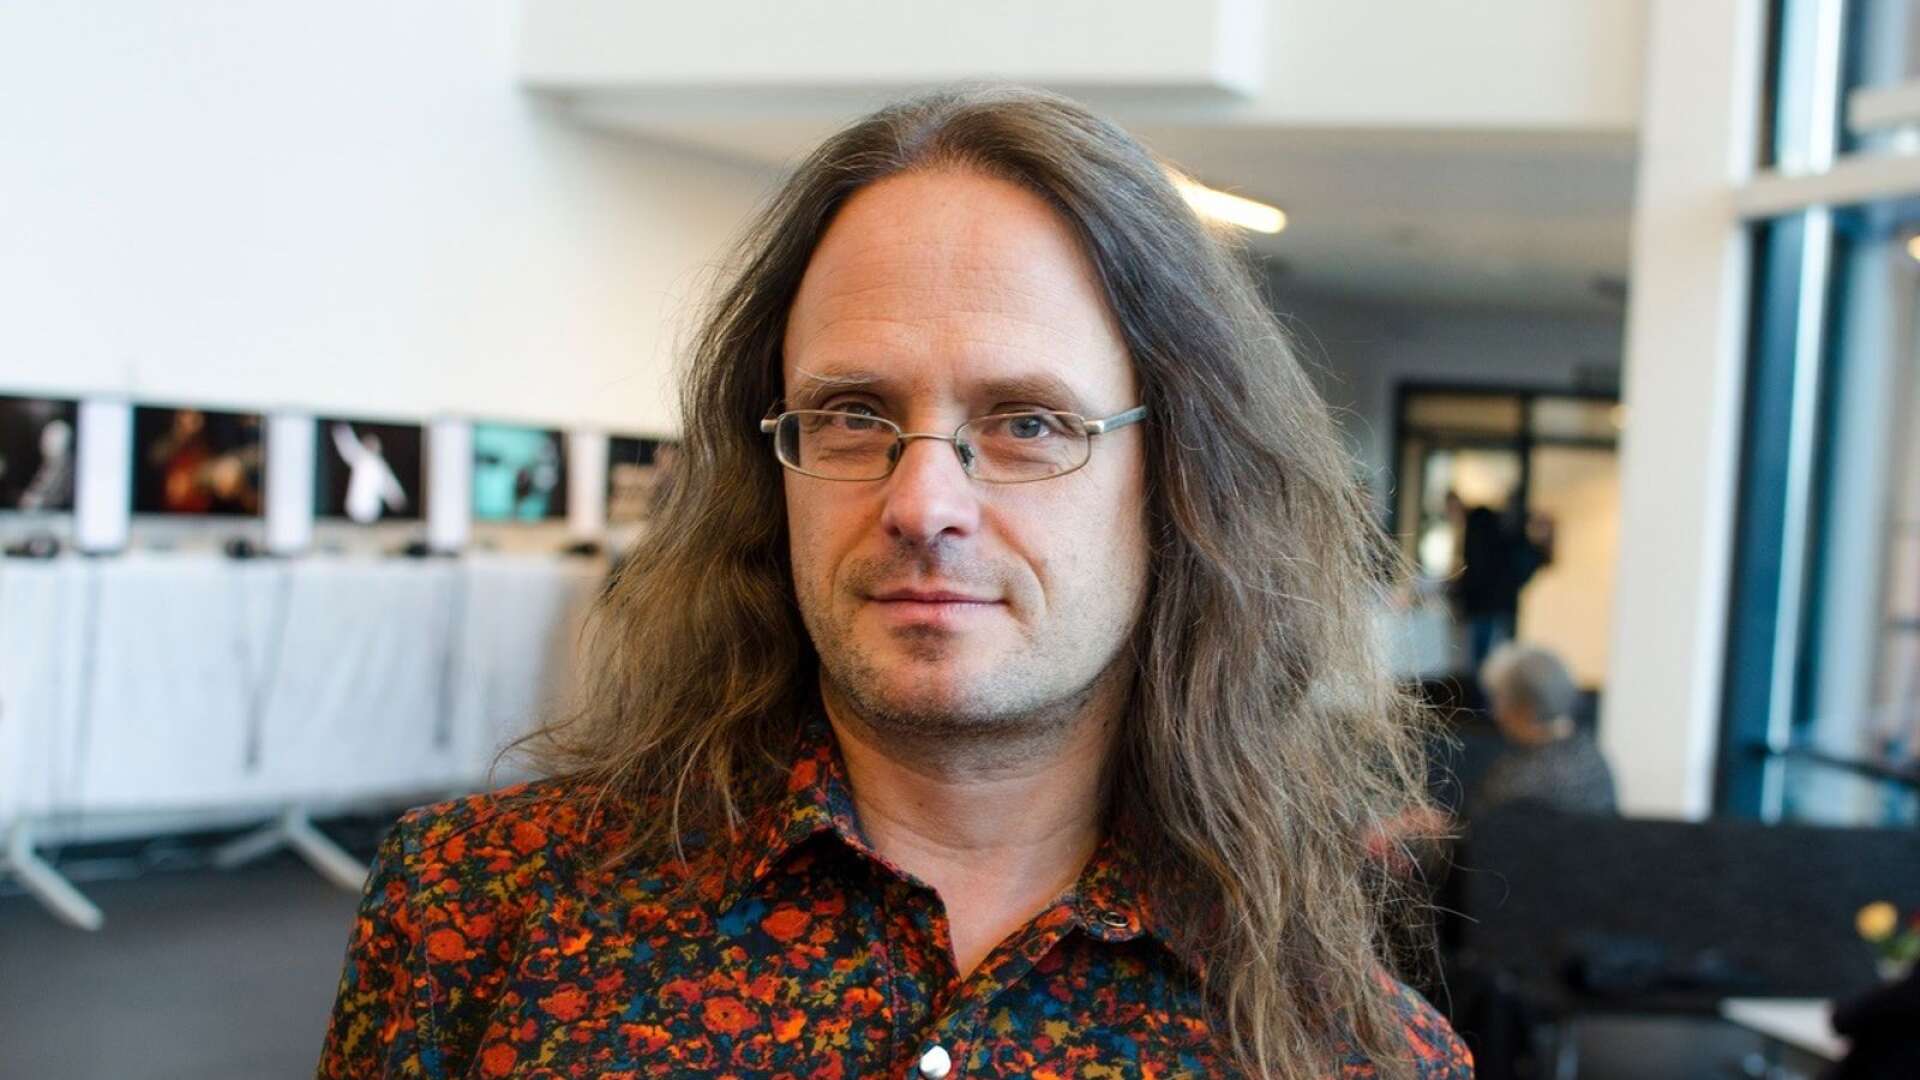 Stefan Östersjö från Musikhögskolan i Piteå/Luleå tekniska universitet blir gästprofessor på Musikhögskolan Ingesund.